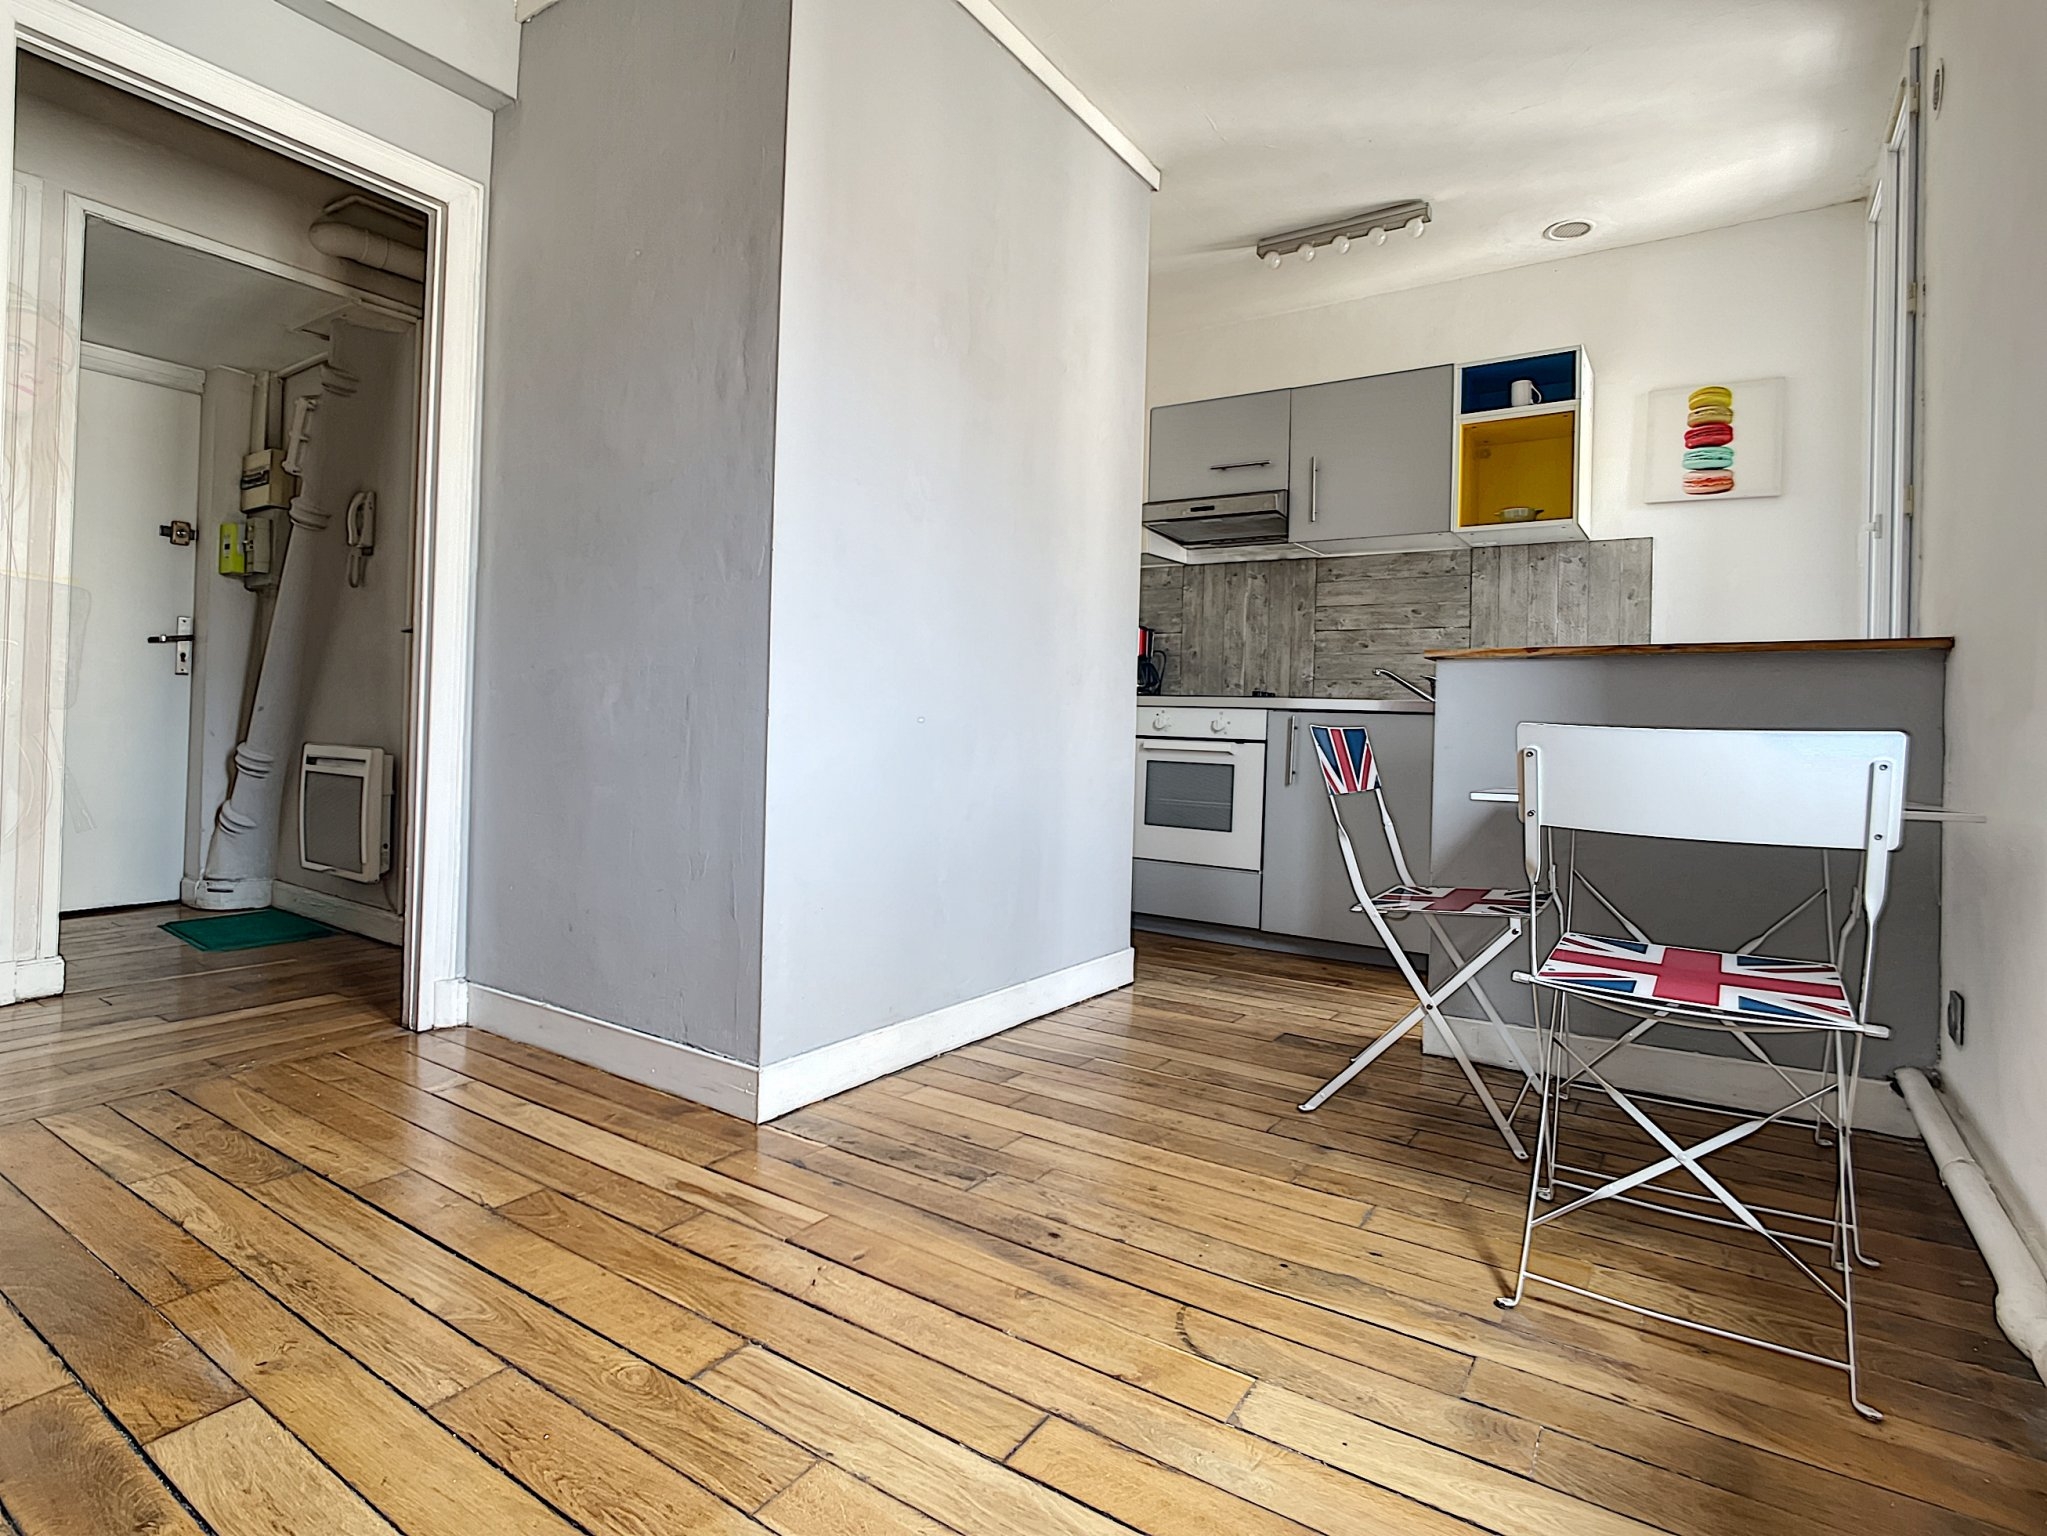 Appartement Reims 2 Pièces 33.2 m2 - 3